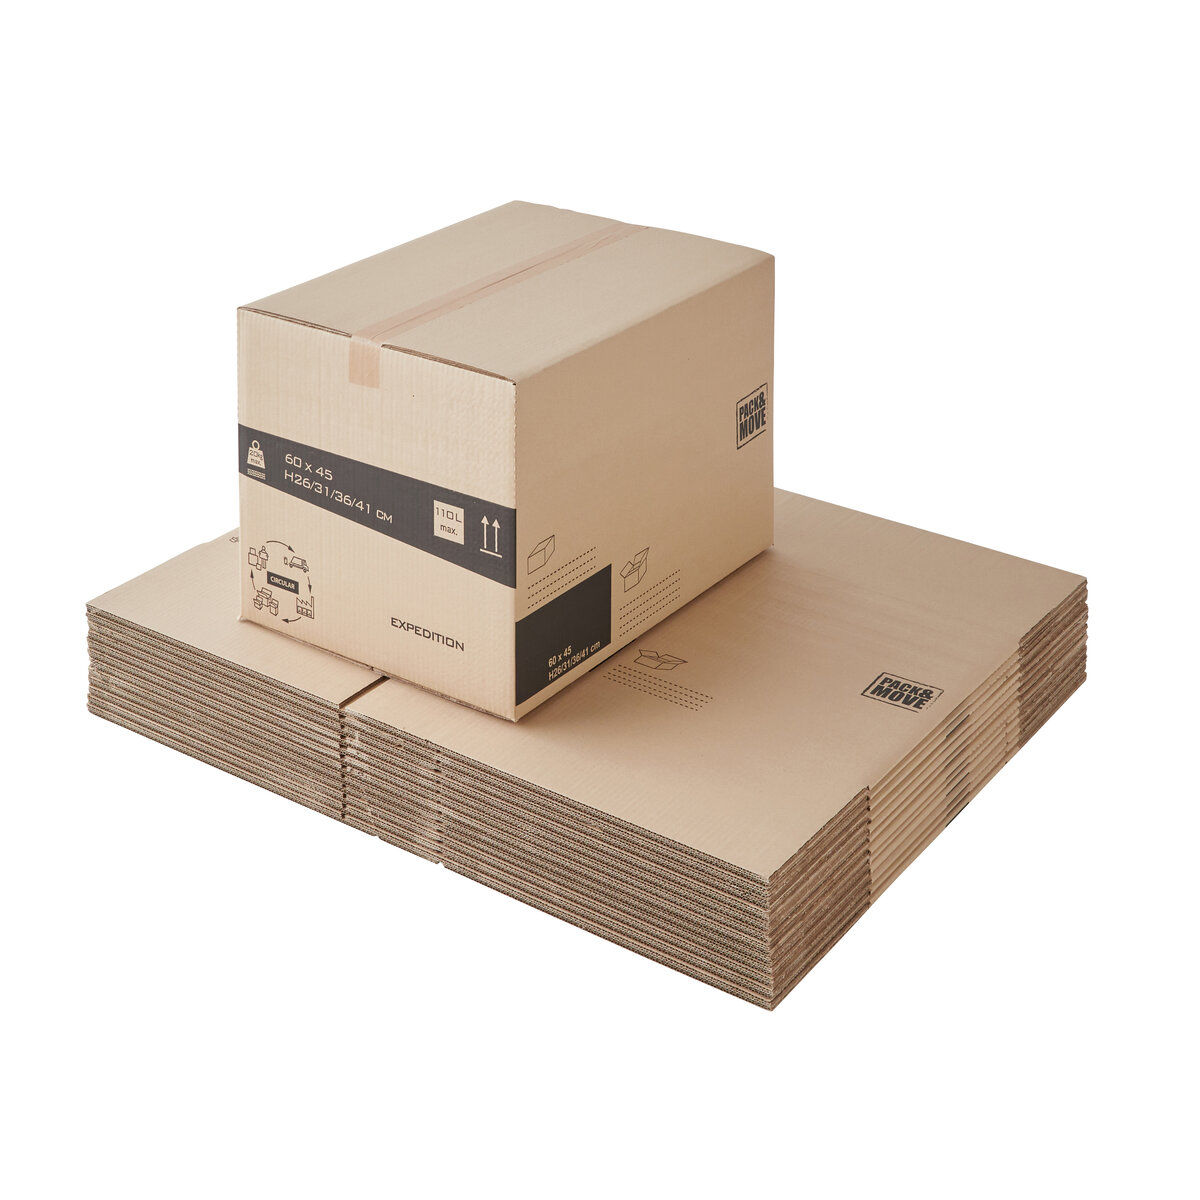 Carton livre : acheter gros cartons de déménagement solides pour